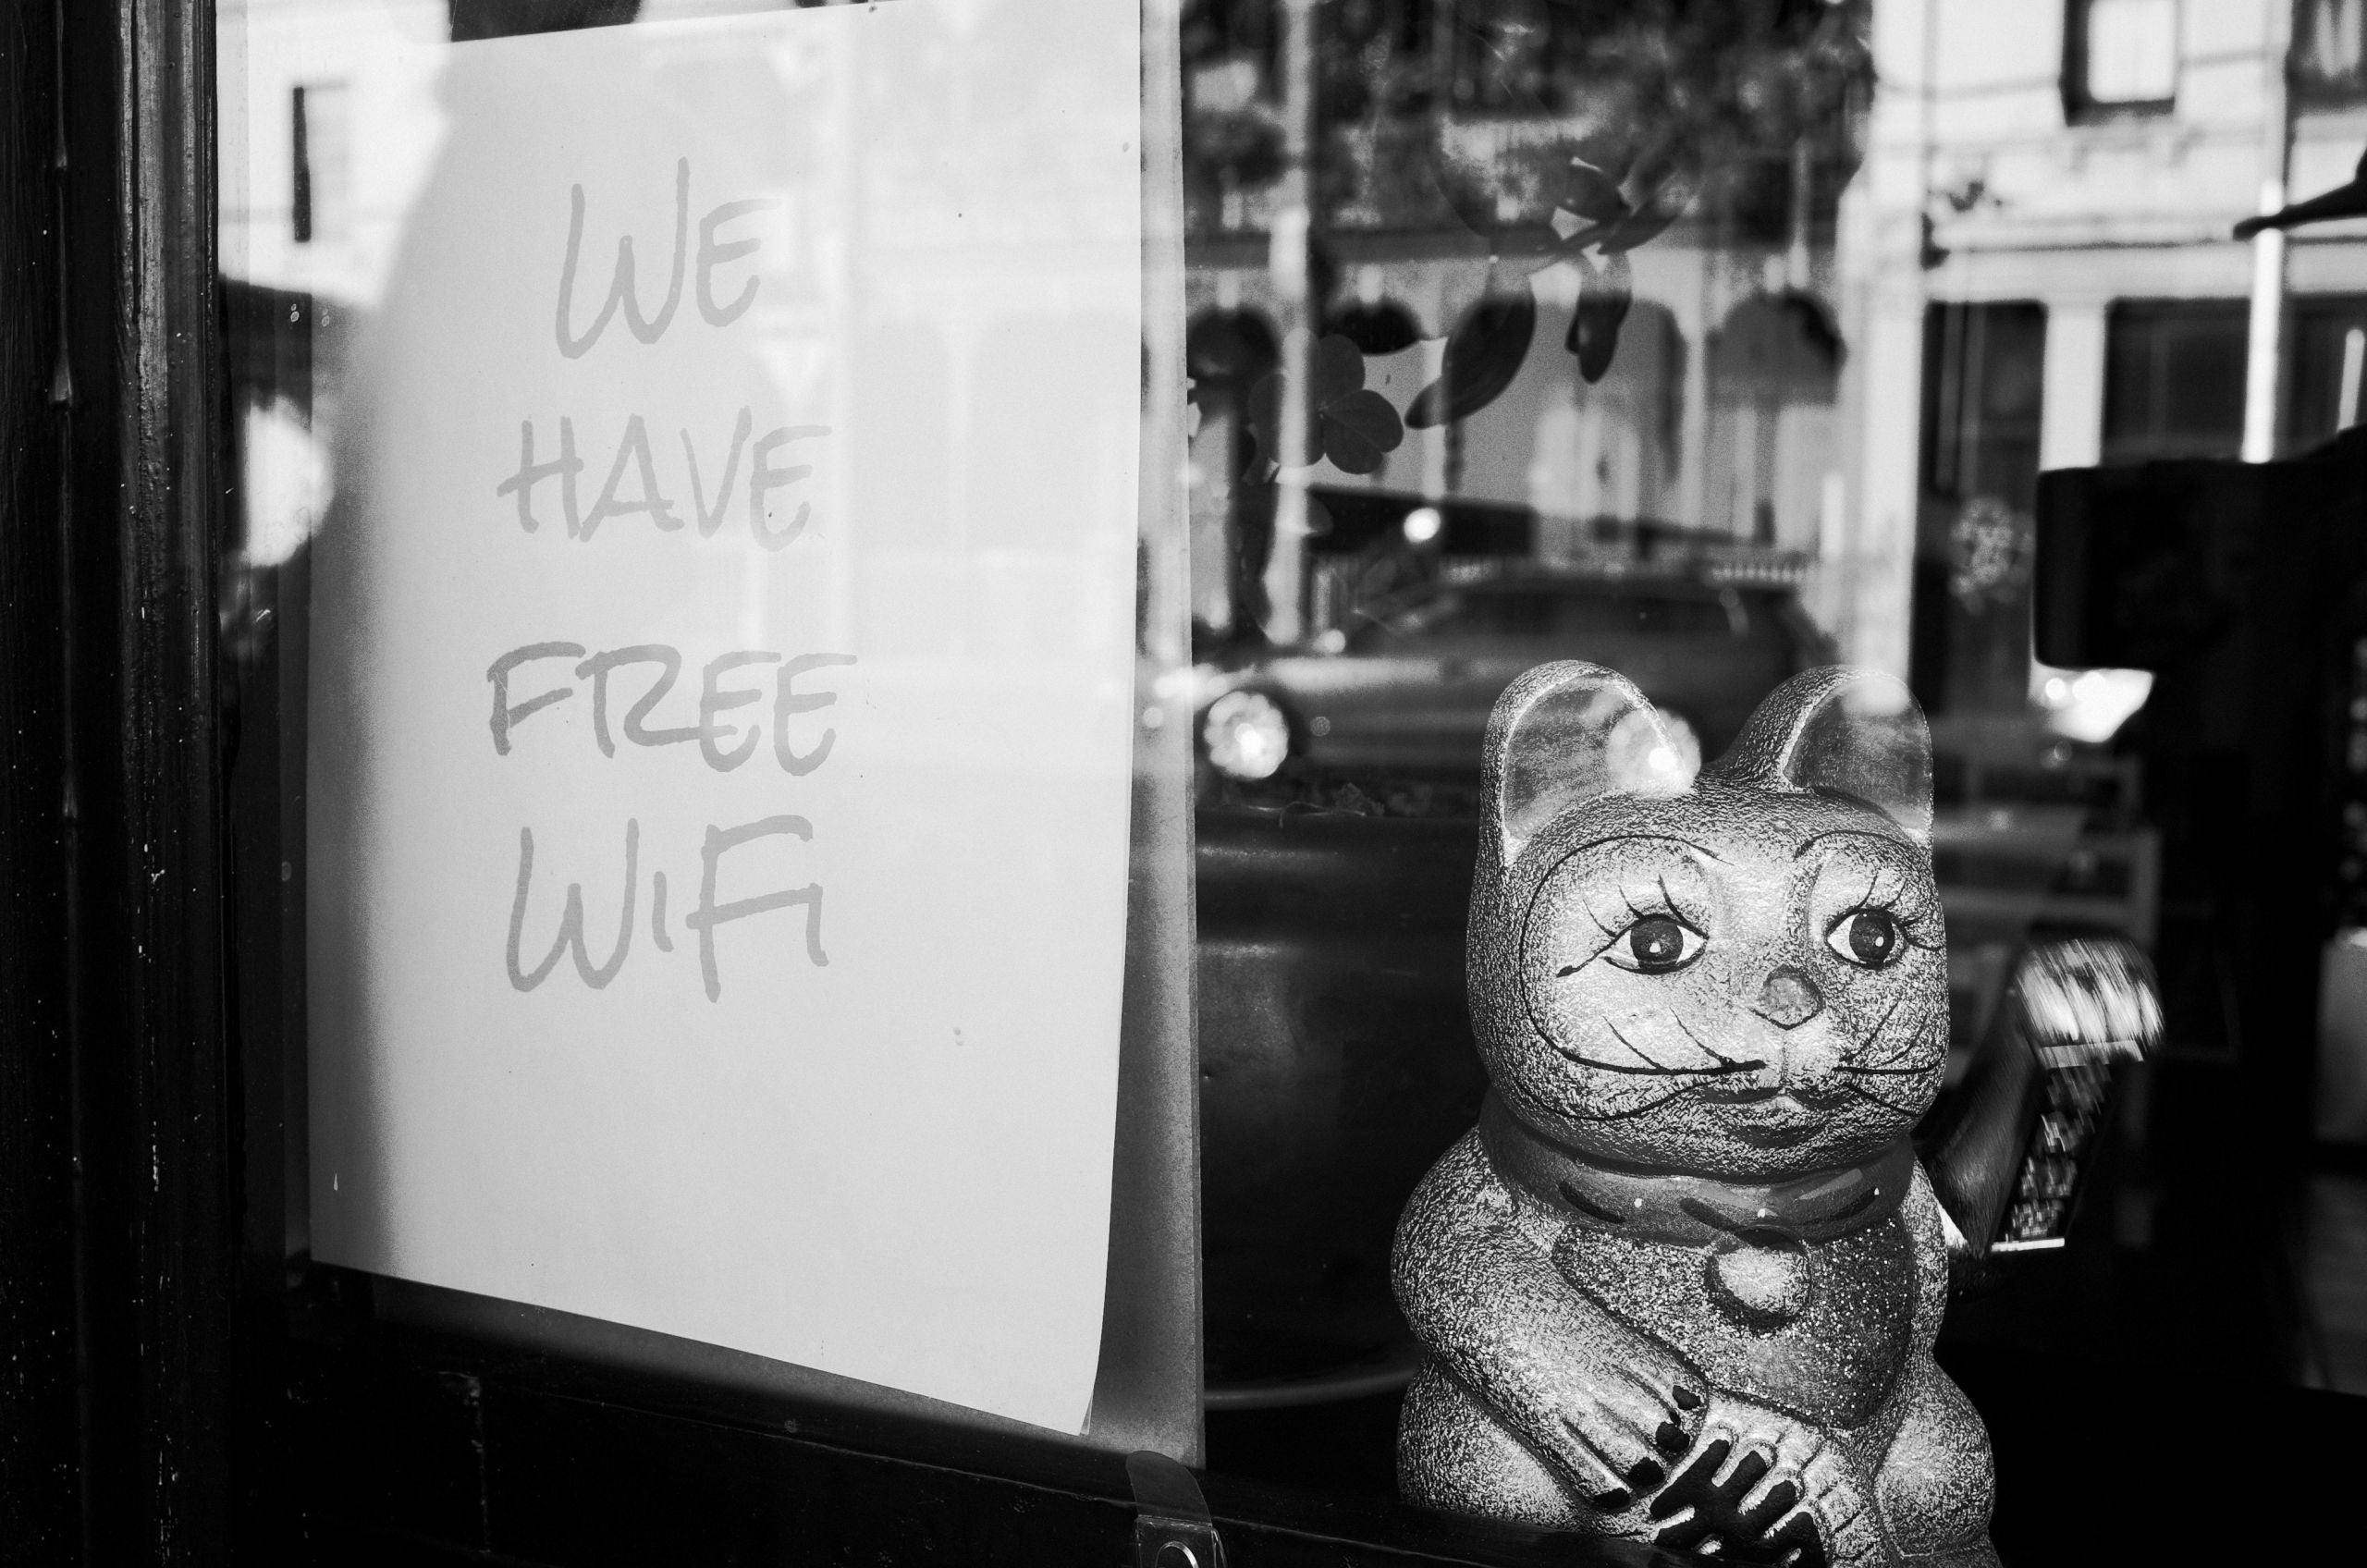 free public wi-fi sign in window